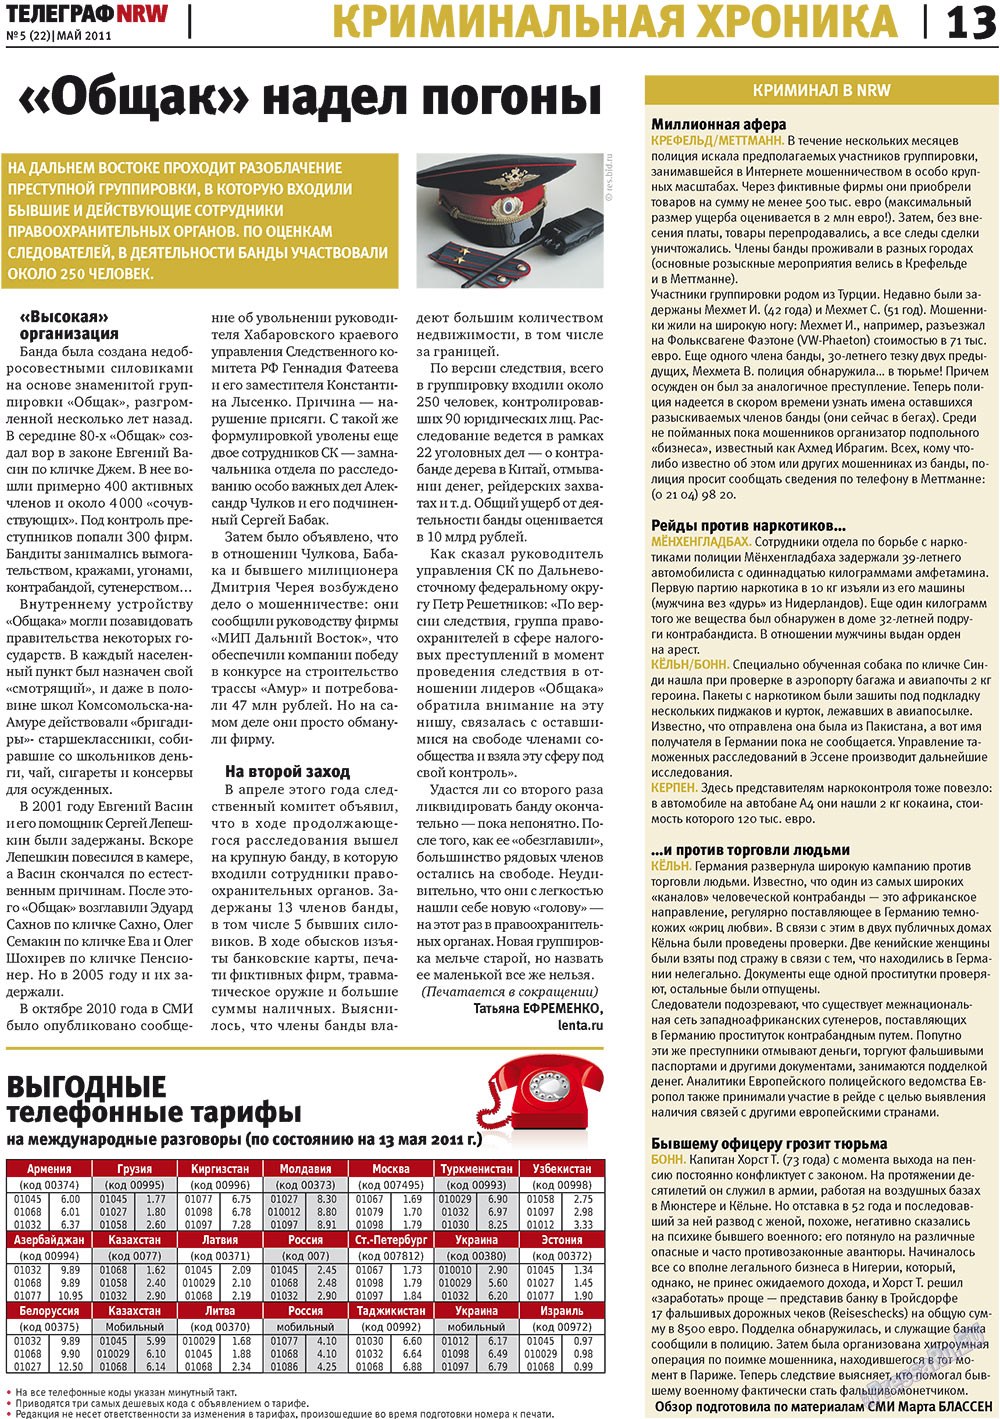 Телеграф NRW (газета). 2011 год, номер 5, стр. 13